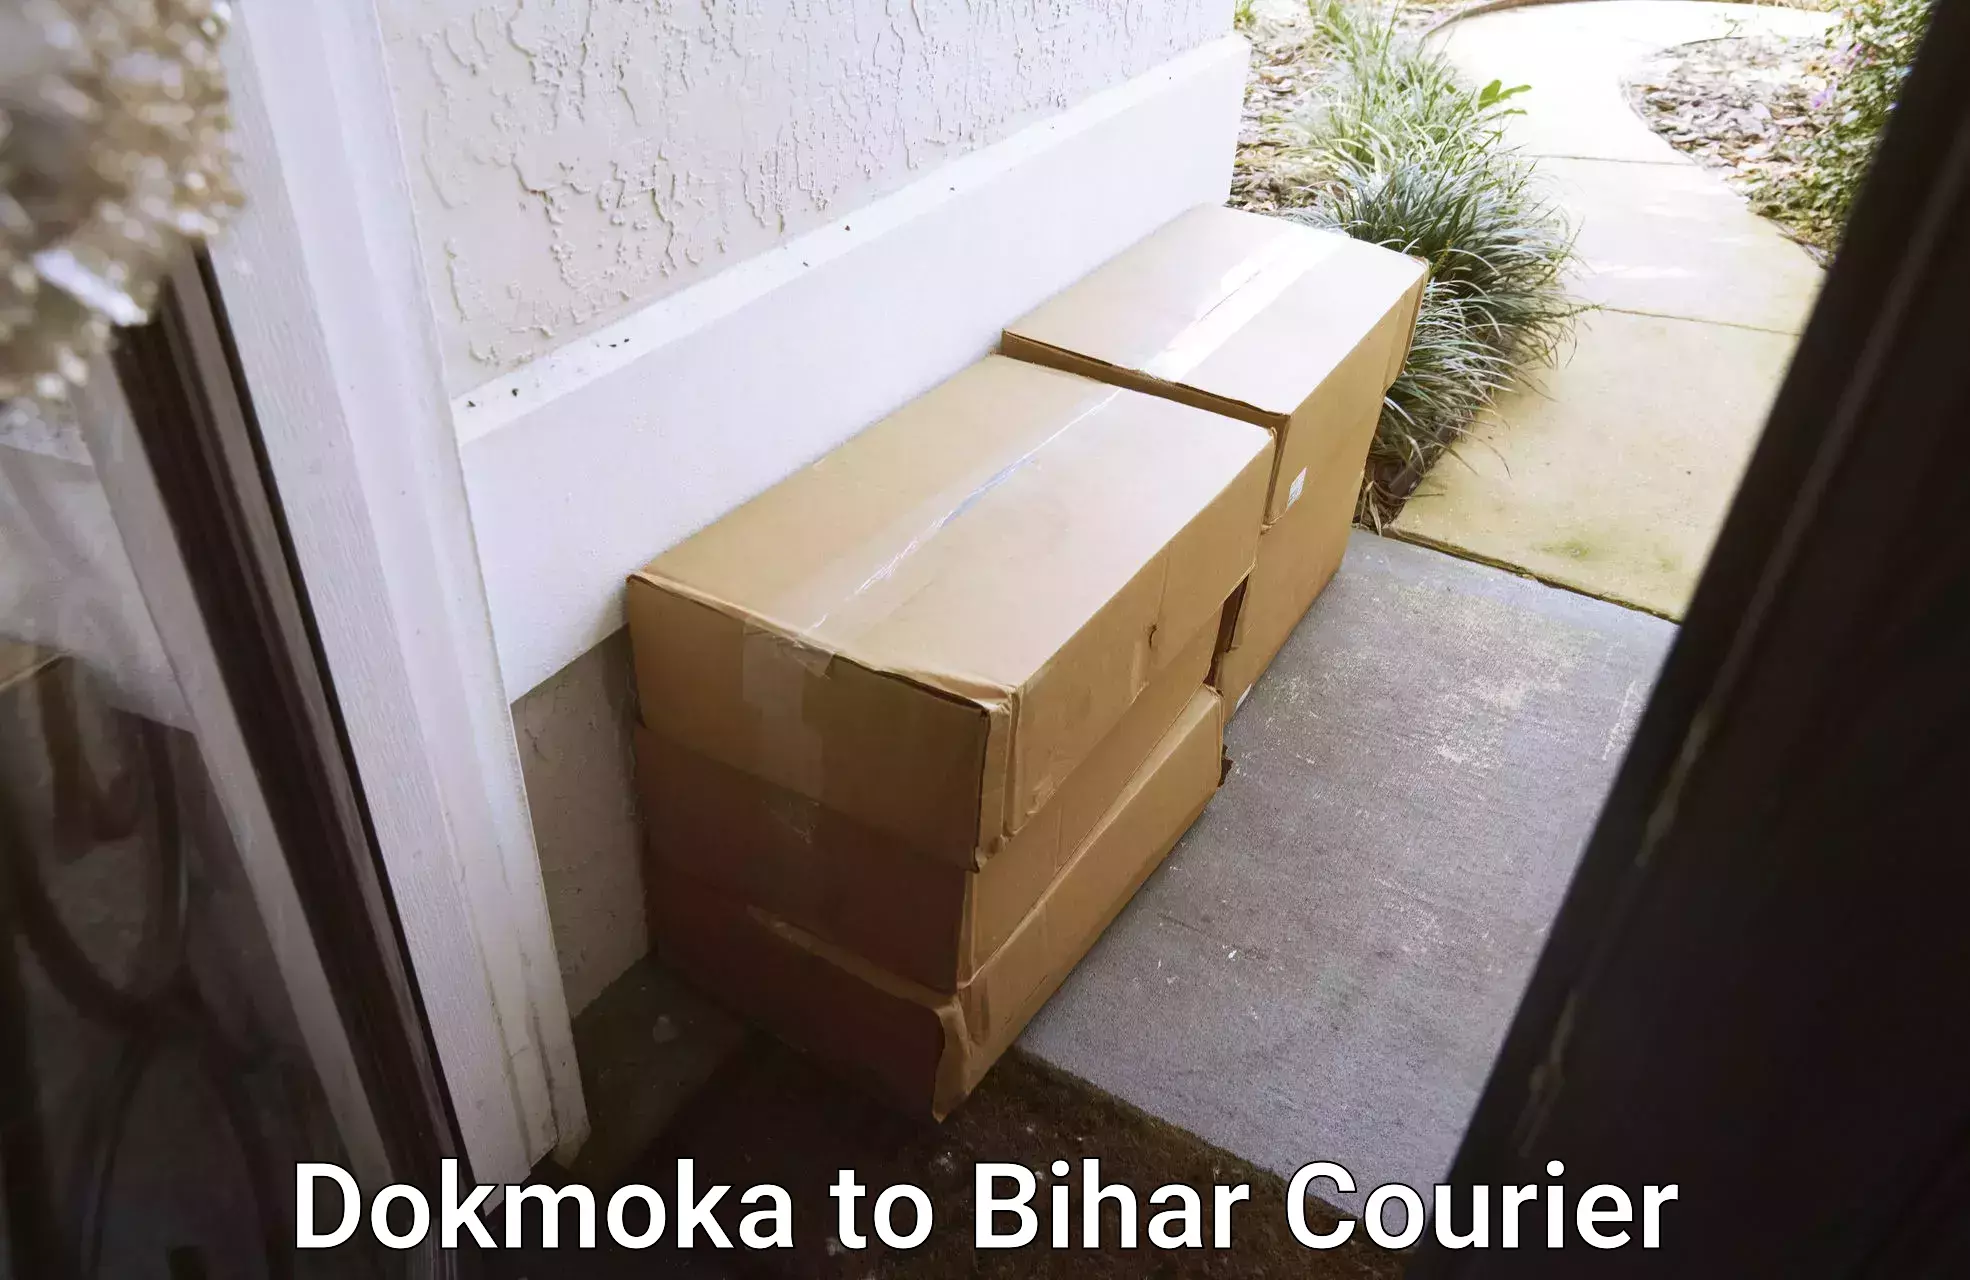 Premium courier services Dokmoka to Bihar